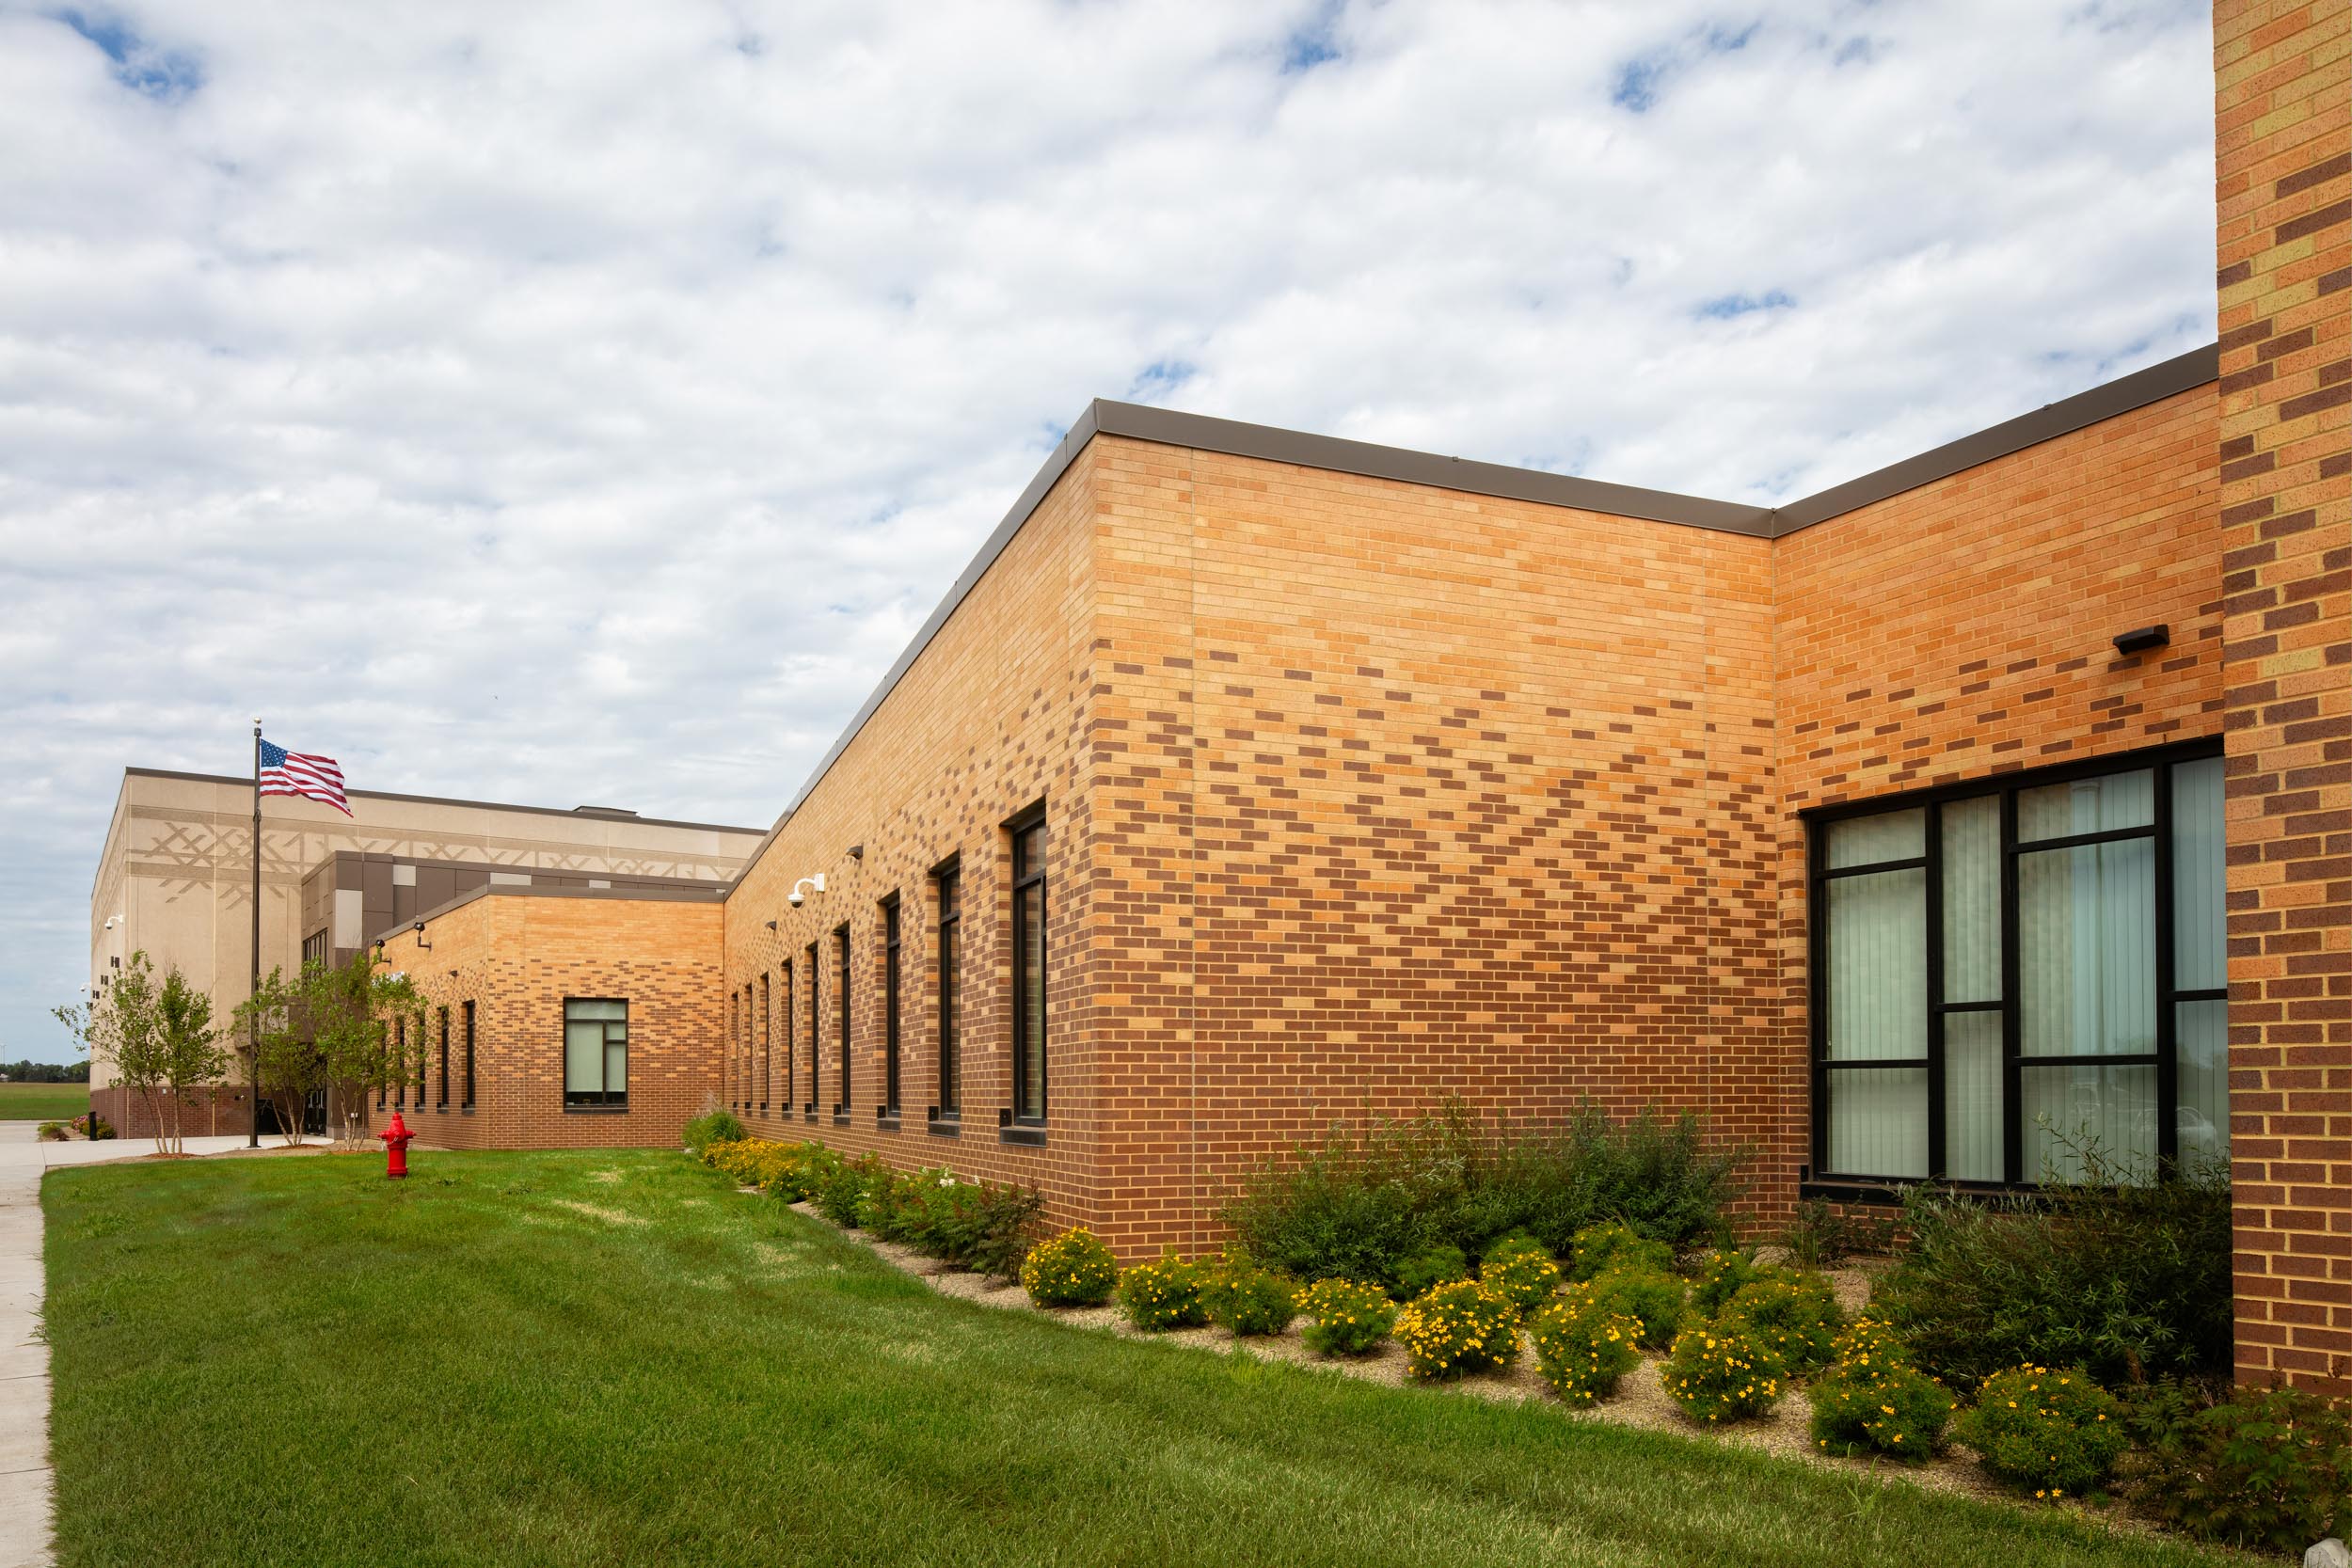 Alternate Learning Center.  Worthington, Minnesota.